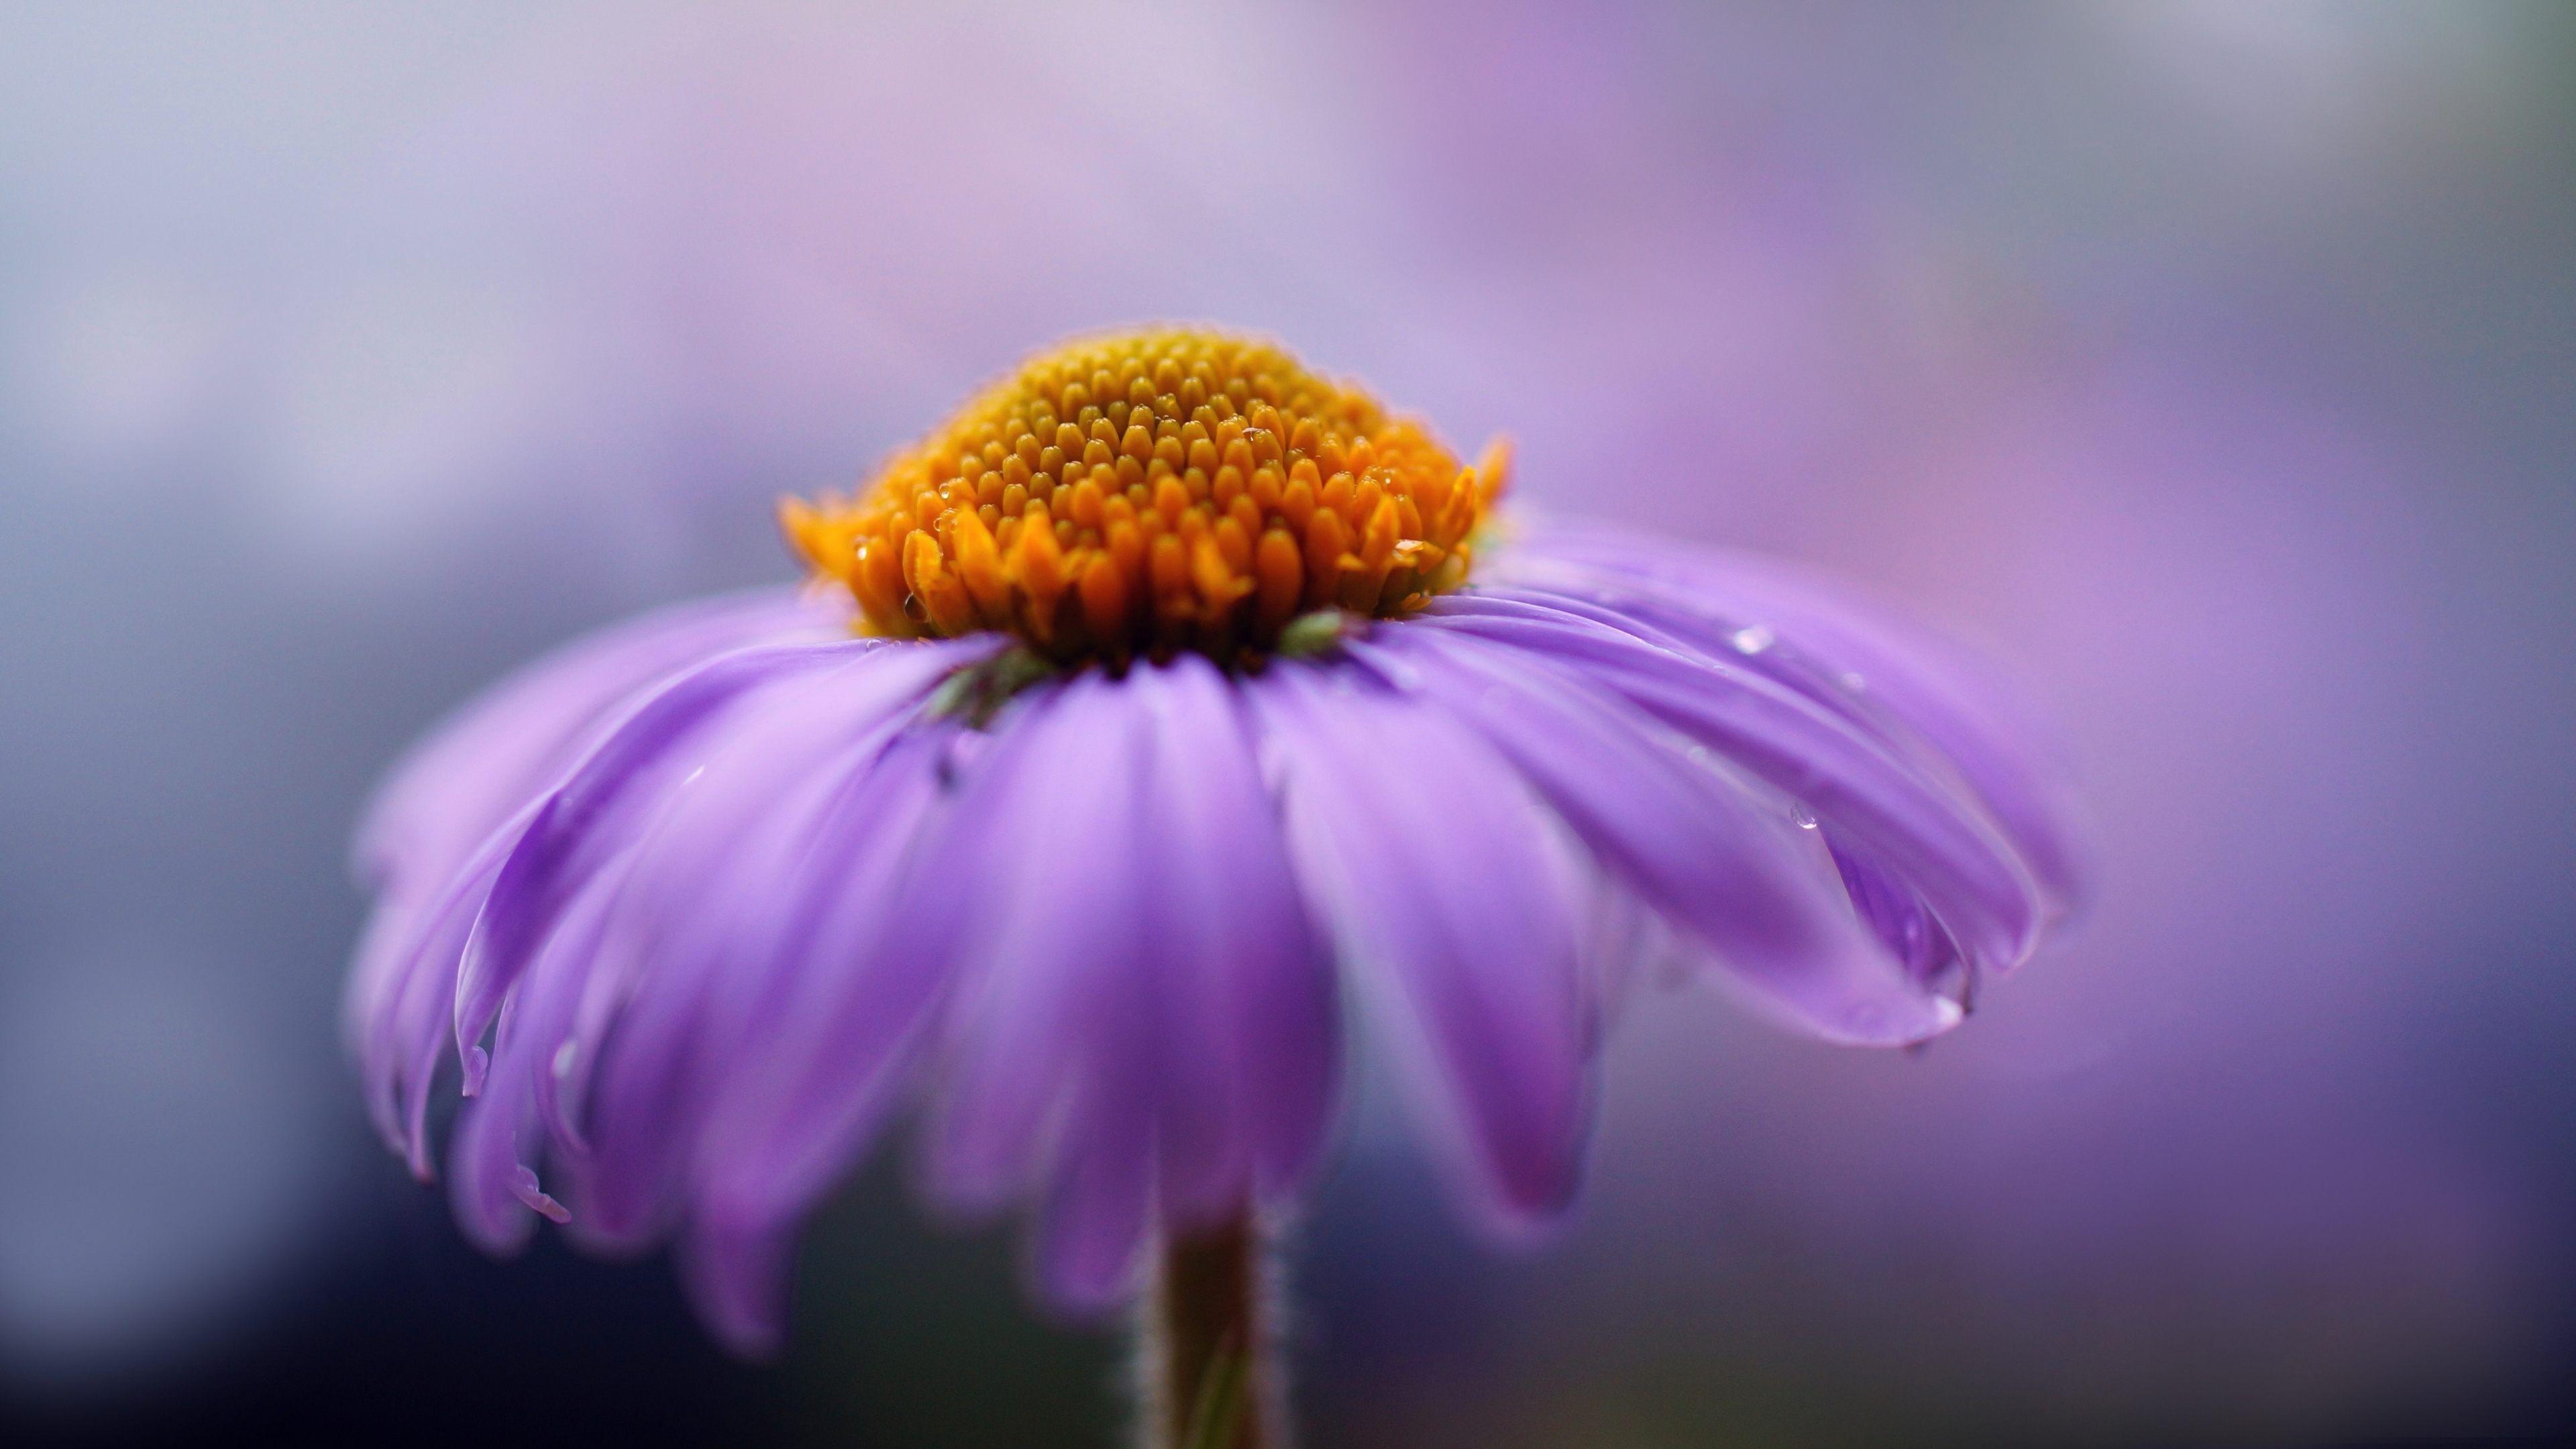 purple flower photography 4k ultra HD wallpaper. Flowers photography, Purple flower background, Photography 4k